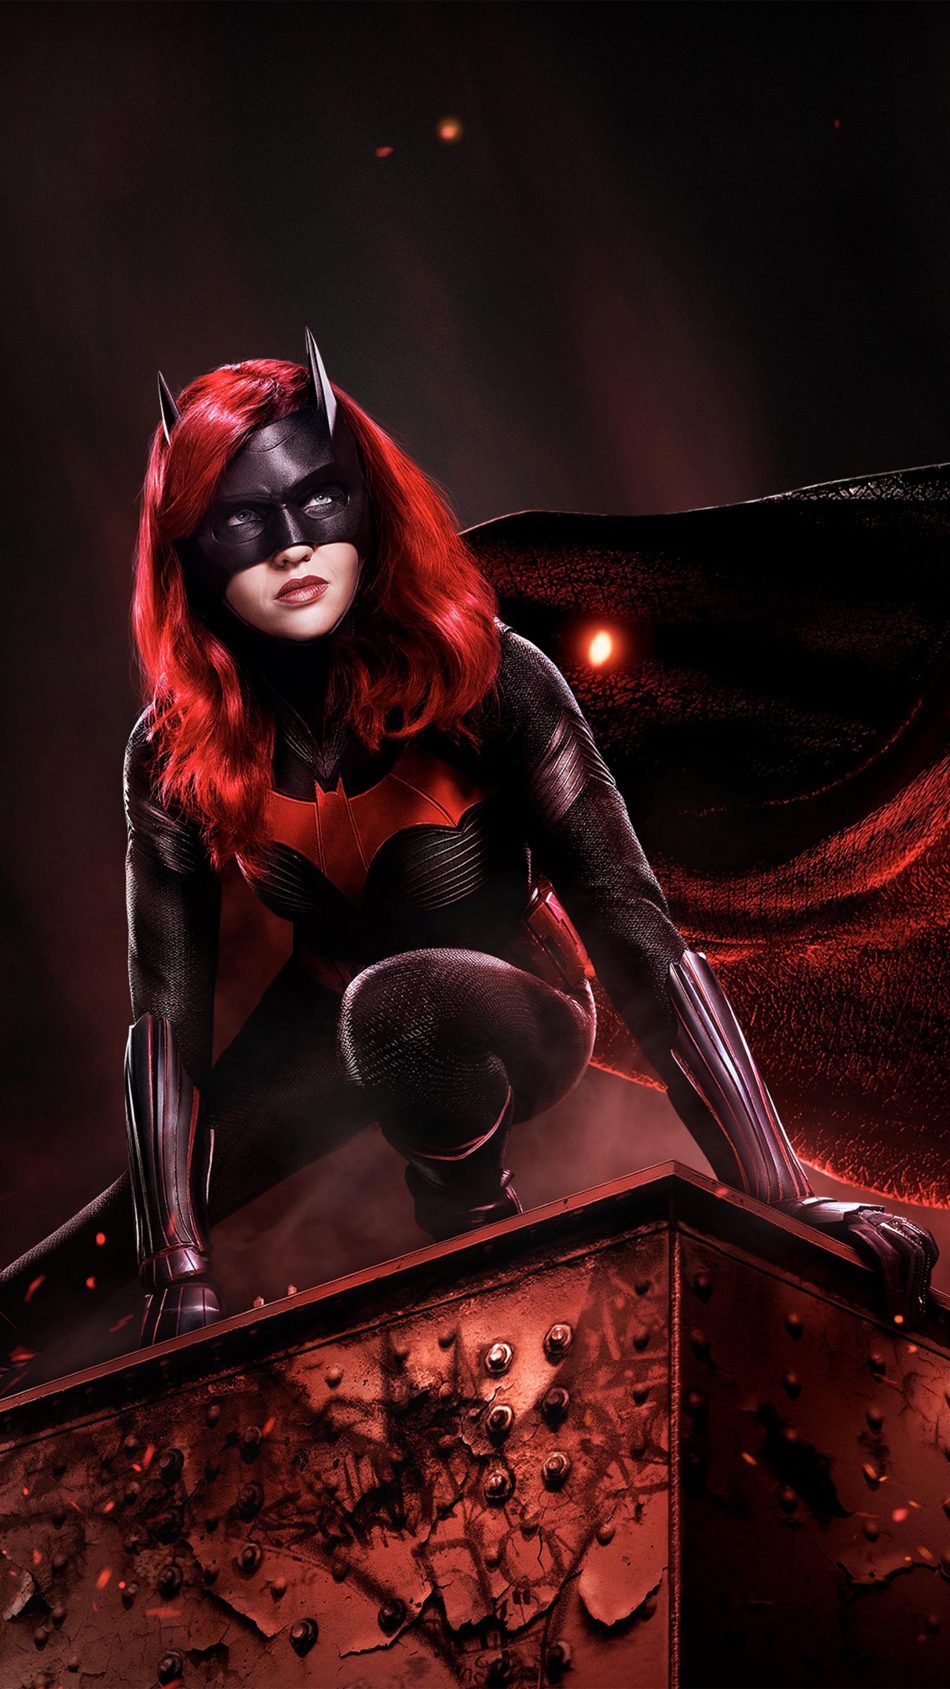 Ruby Rose In Batwoman 2019 4k Ultra Hd Mobile Wallpaper - Batwoman Season 1 Cw11 - HD Wallpaper 